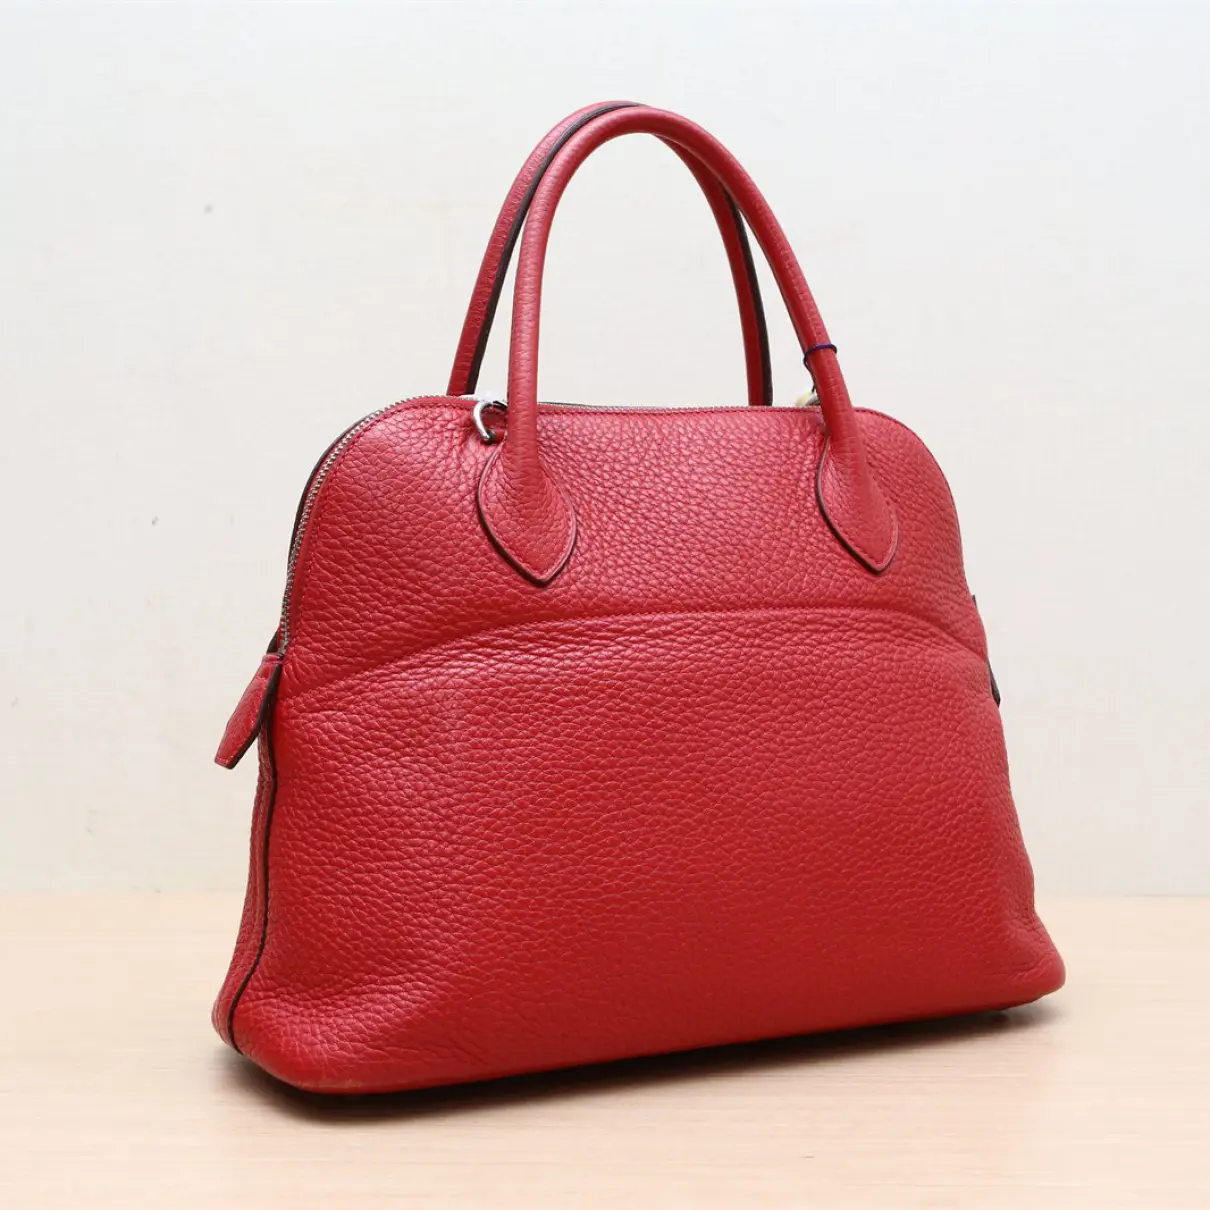 Buy Hermès Bolide leather handbag online